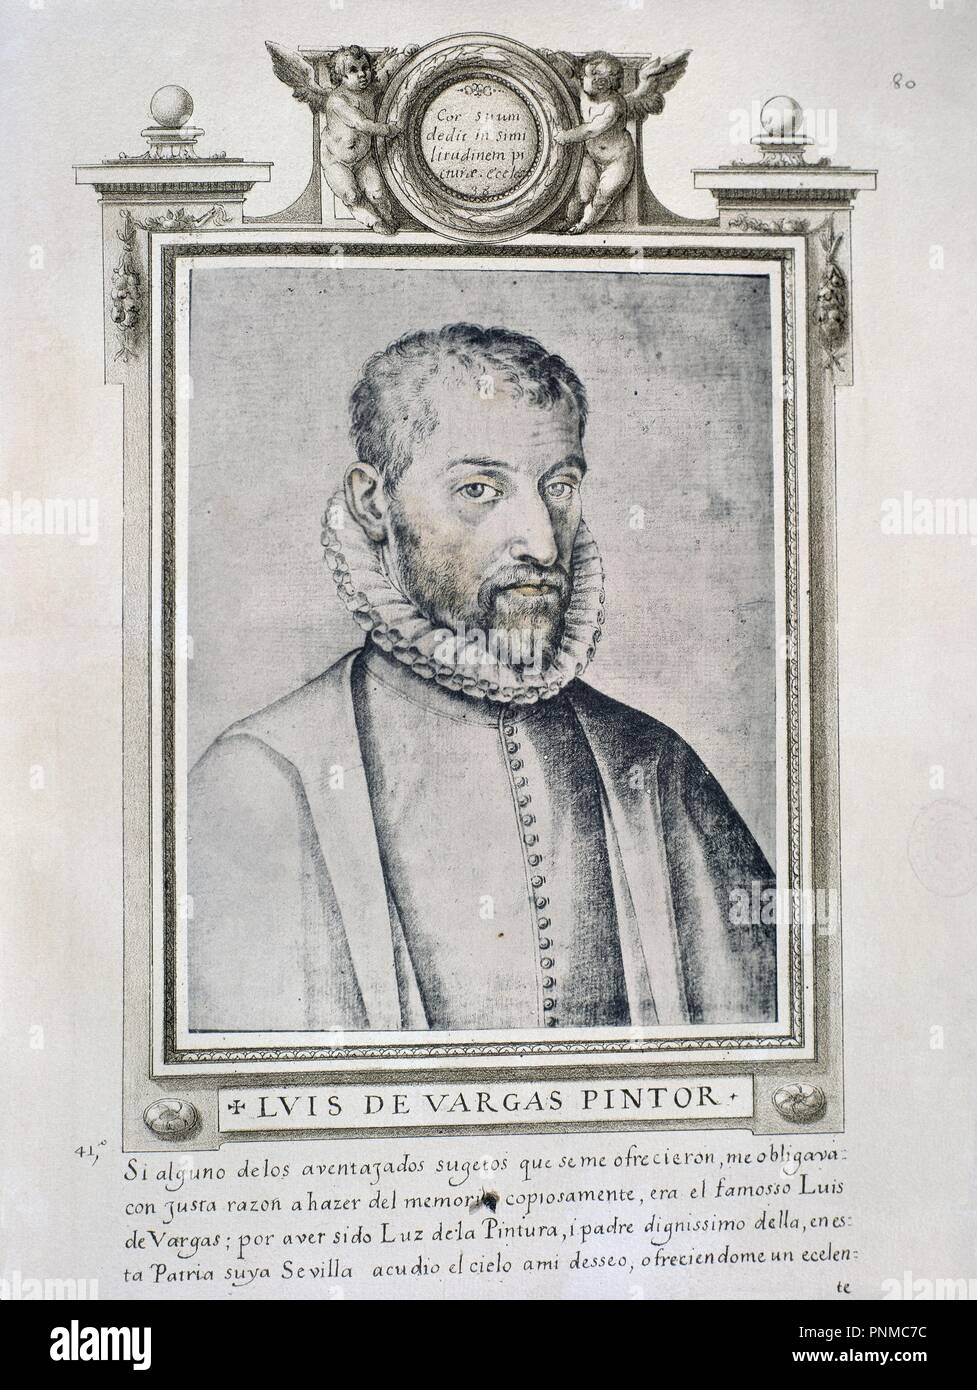 LUIS DE VARGAS - LIBRO DE RETRATOS DE ILUSTRES Y MEMORABLES VARONES - 1599. Author: PACHECO, FRANCISCO. Location: BIBLIOTECA NACIONAL-COLECCION. MADRID. SPAIN. Stock Photo